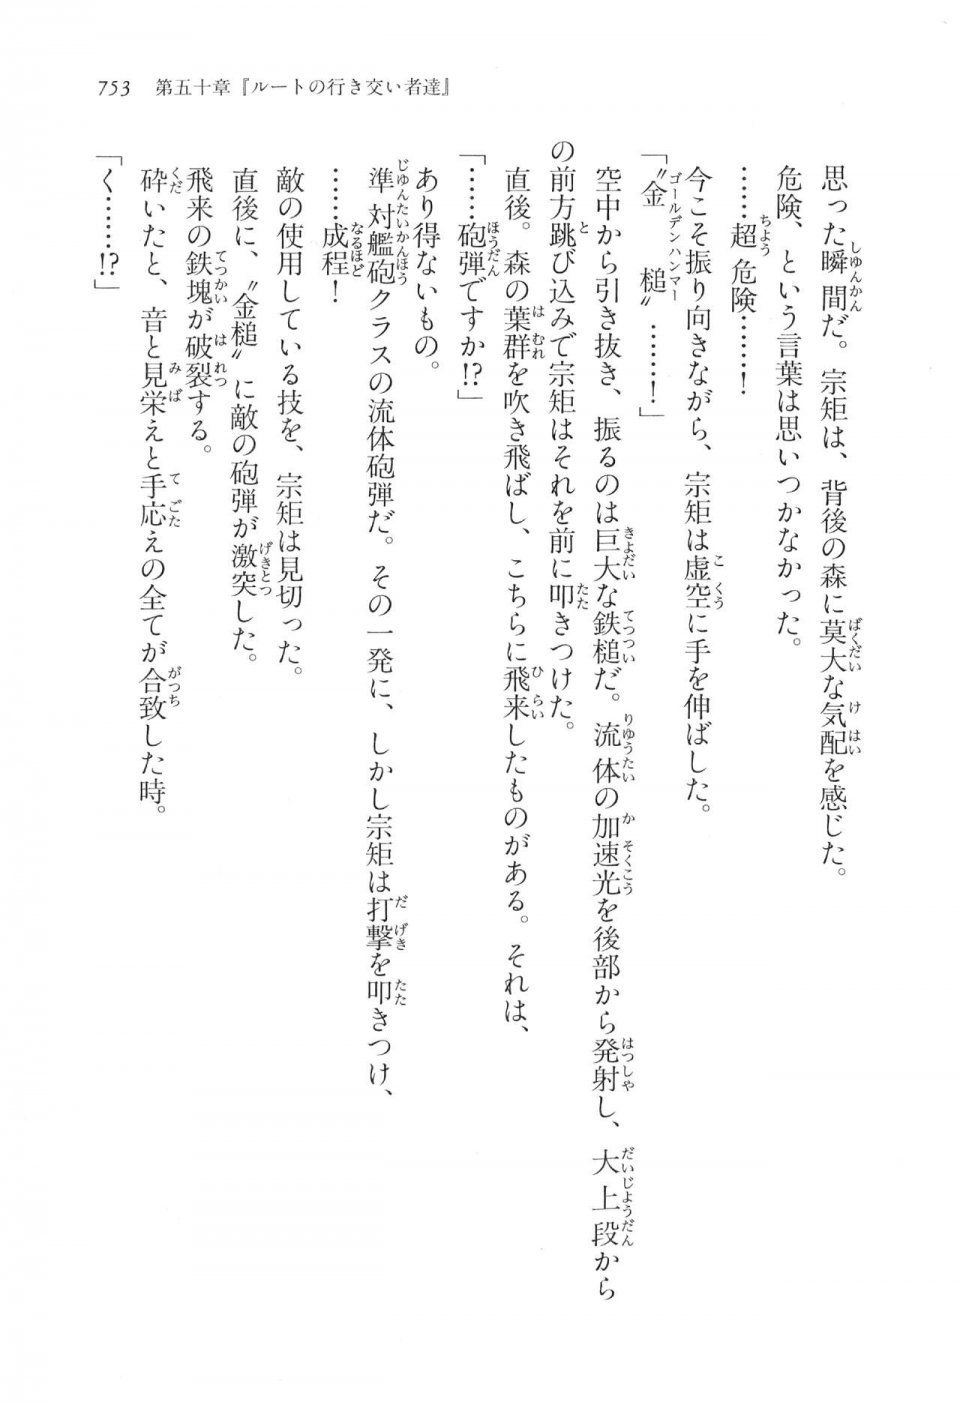 Kyoukai Senjou no Horizon LN Vol 17(7B) - Photo #755